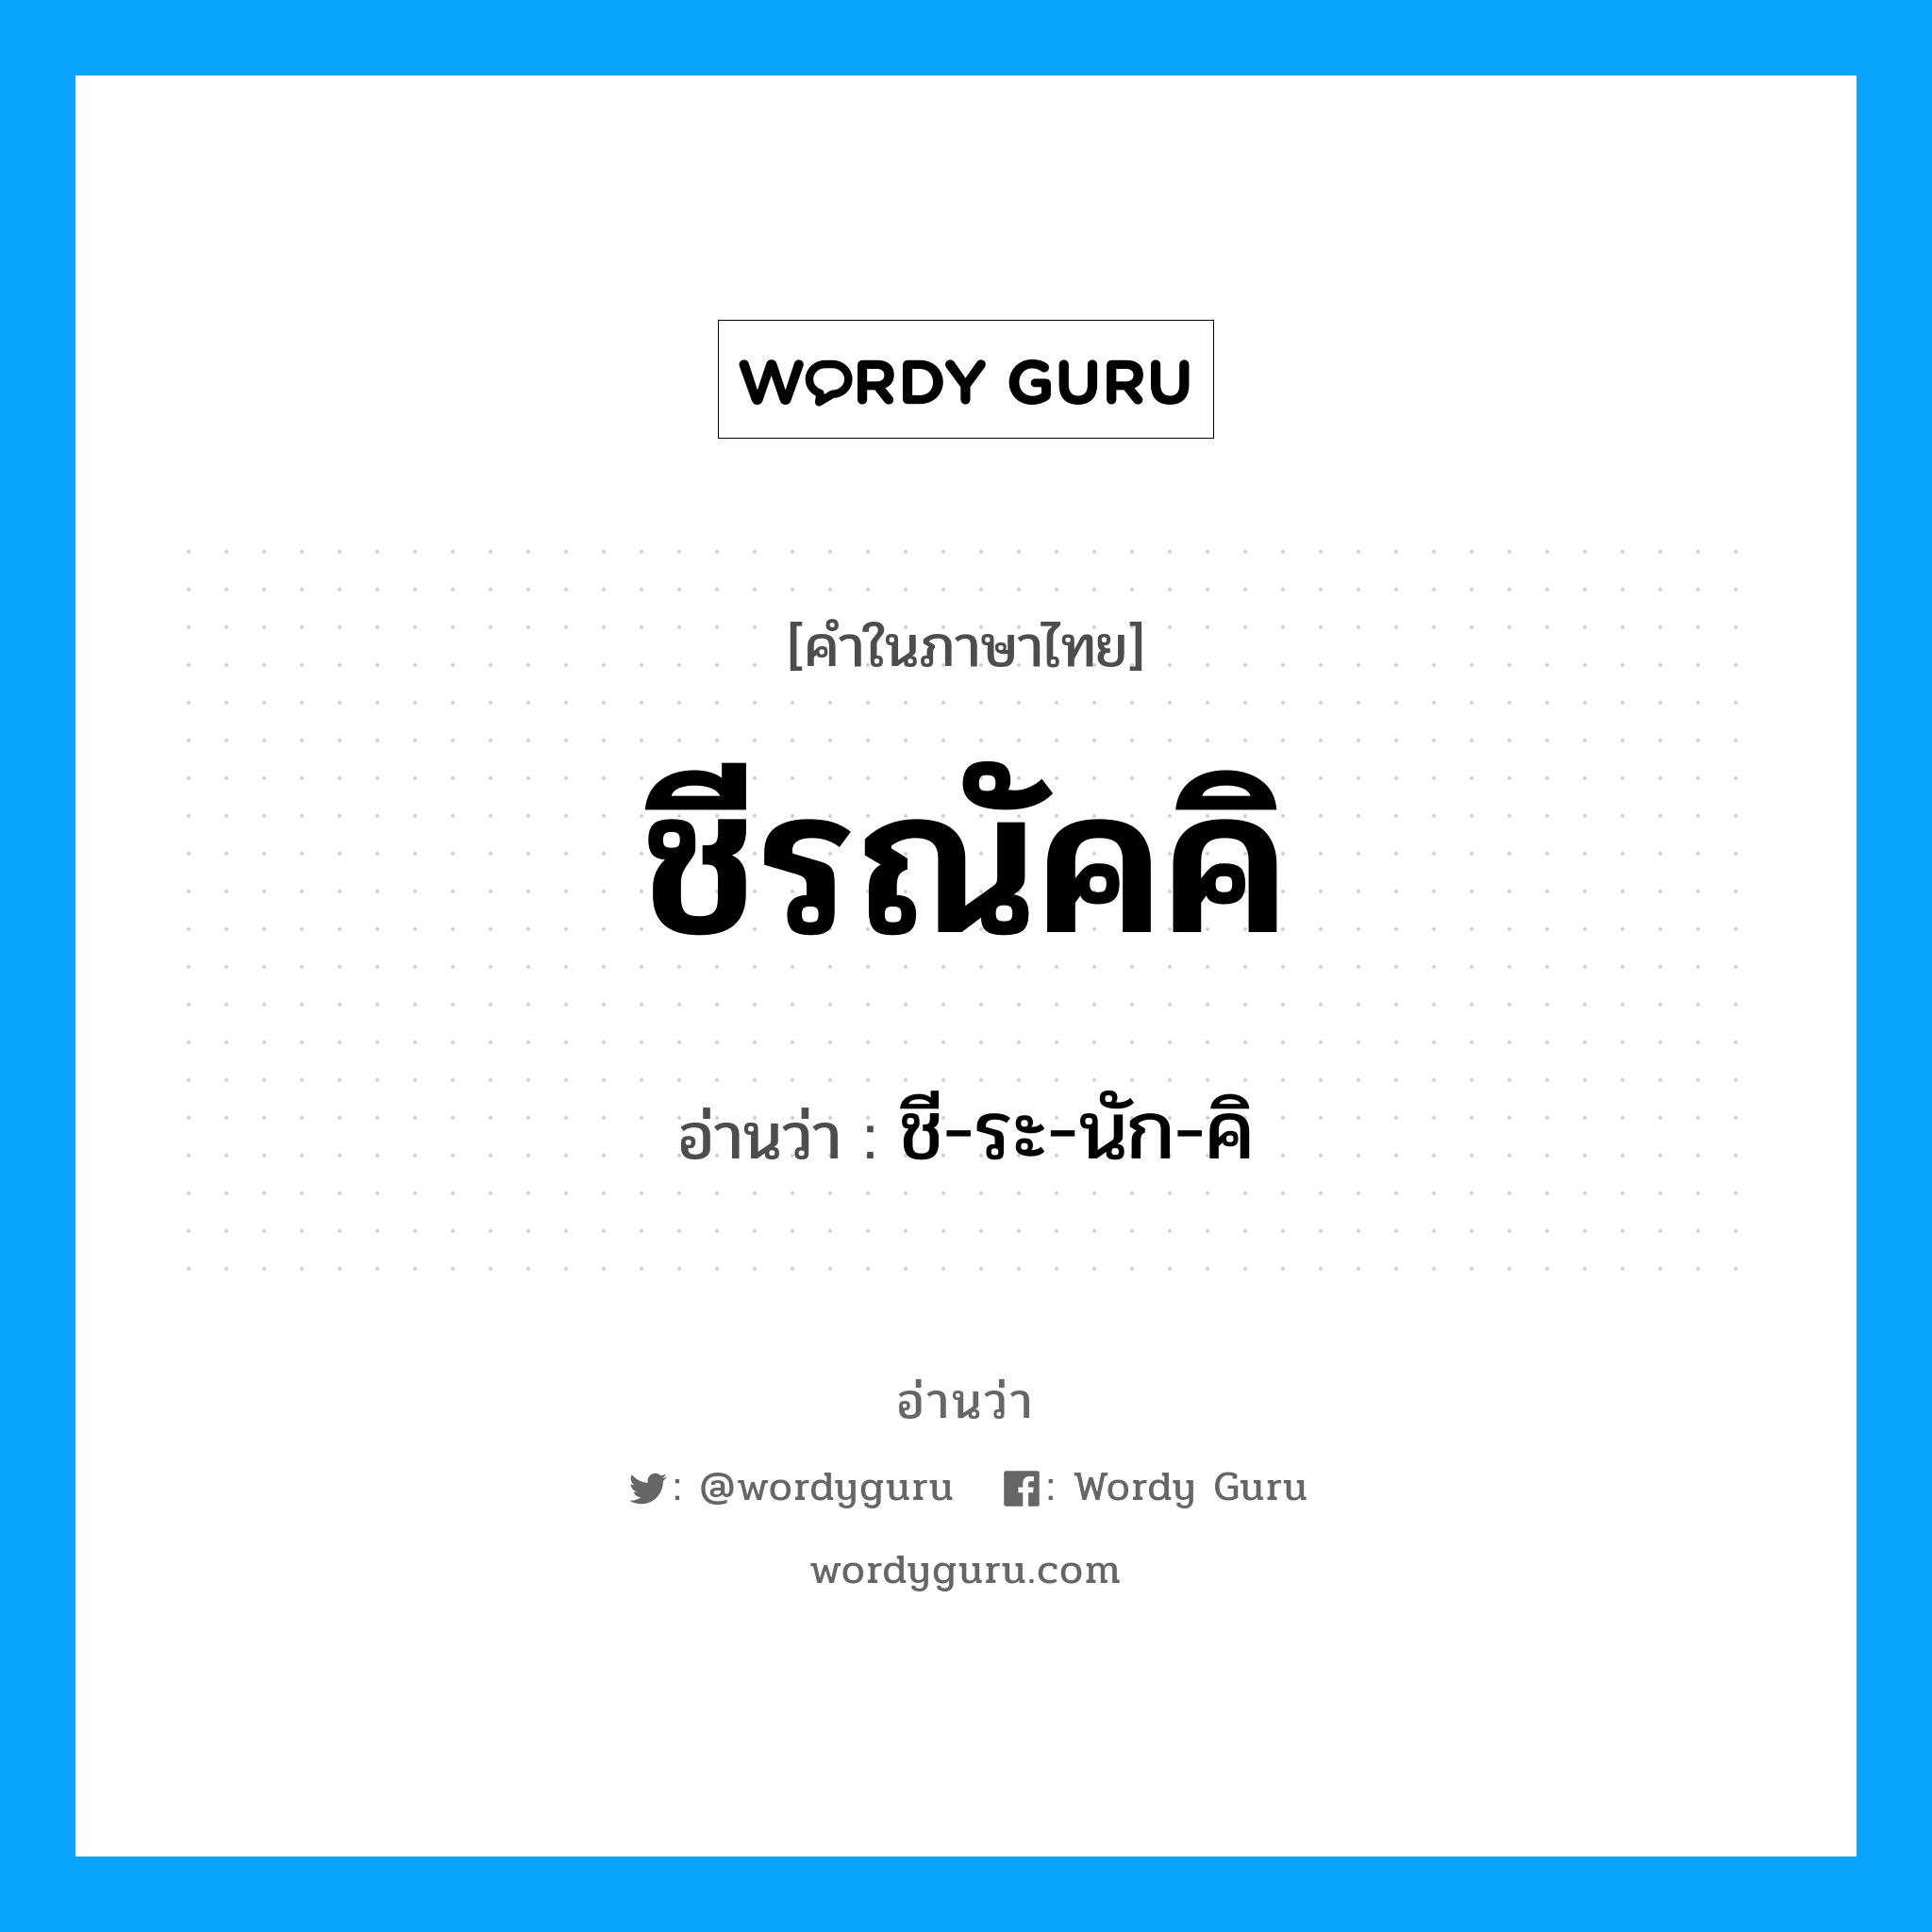 ชี-ระ-นัก-คิ เป็นคำอ่านของคำไหน?, คำในภาษาไทย ชี-ระ-นัก-คิ อ่านว่า ชีรณัคคิ